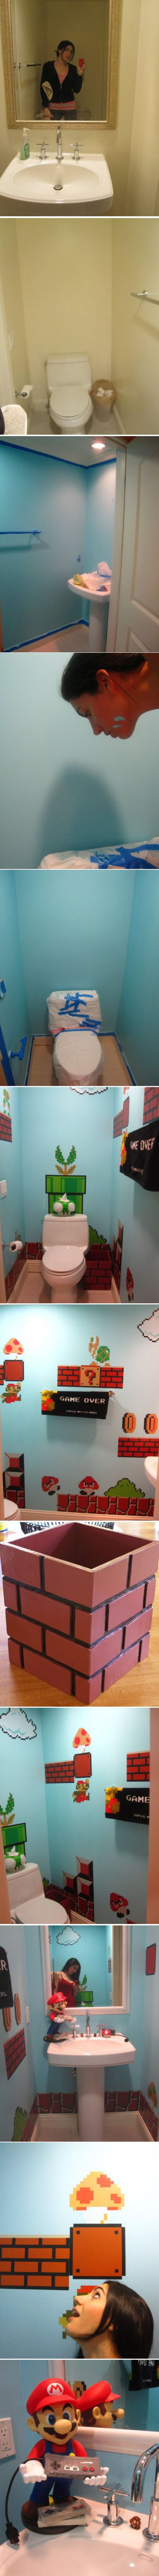 Des toilettes in the Mario's world.